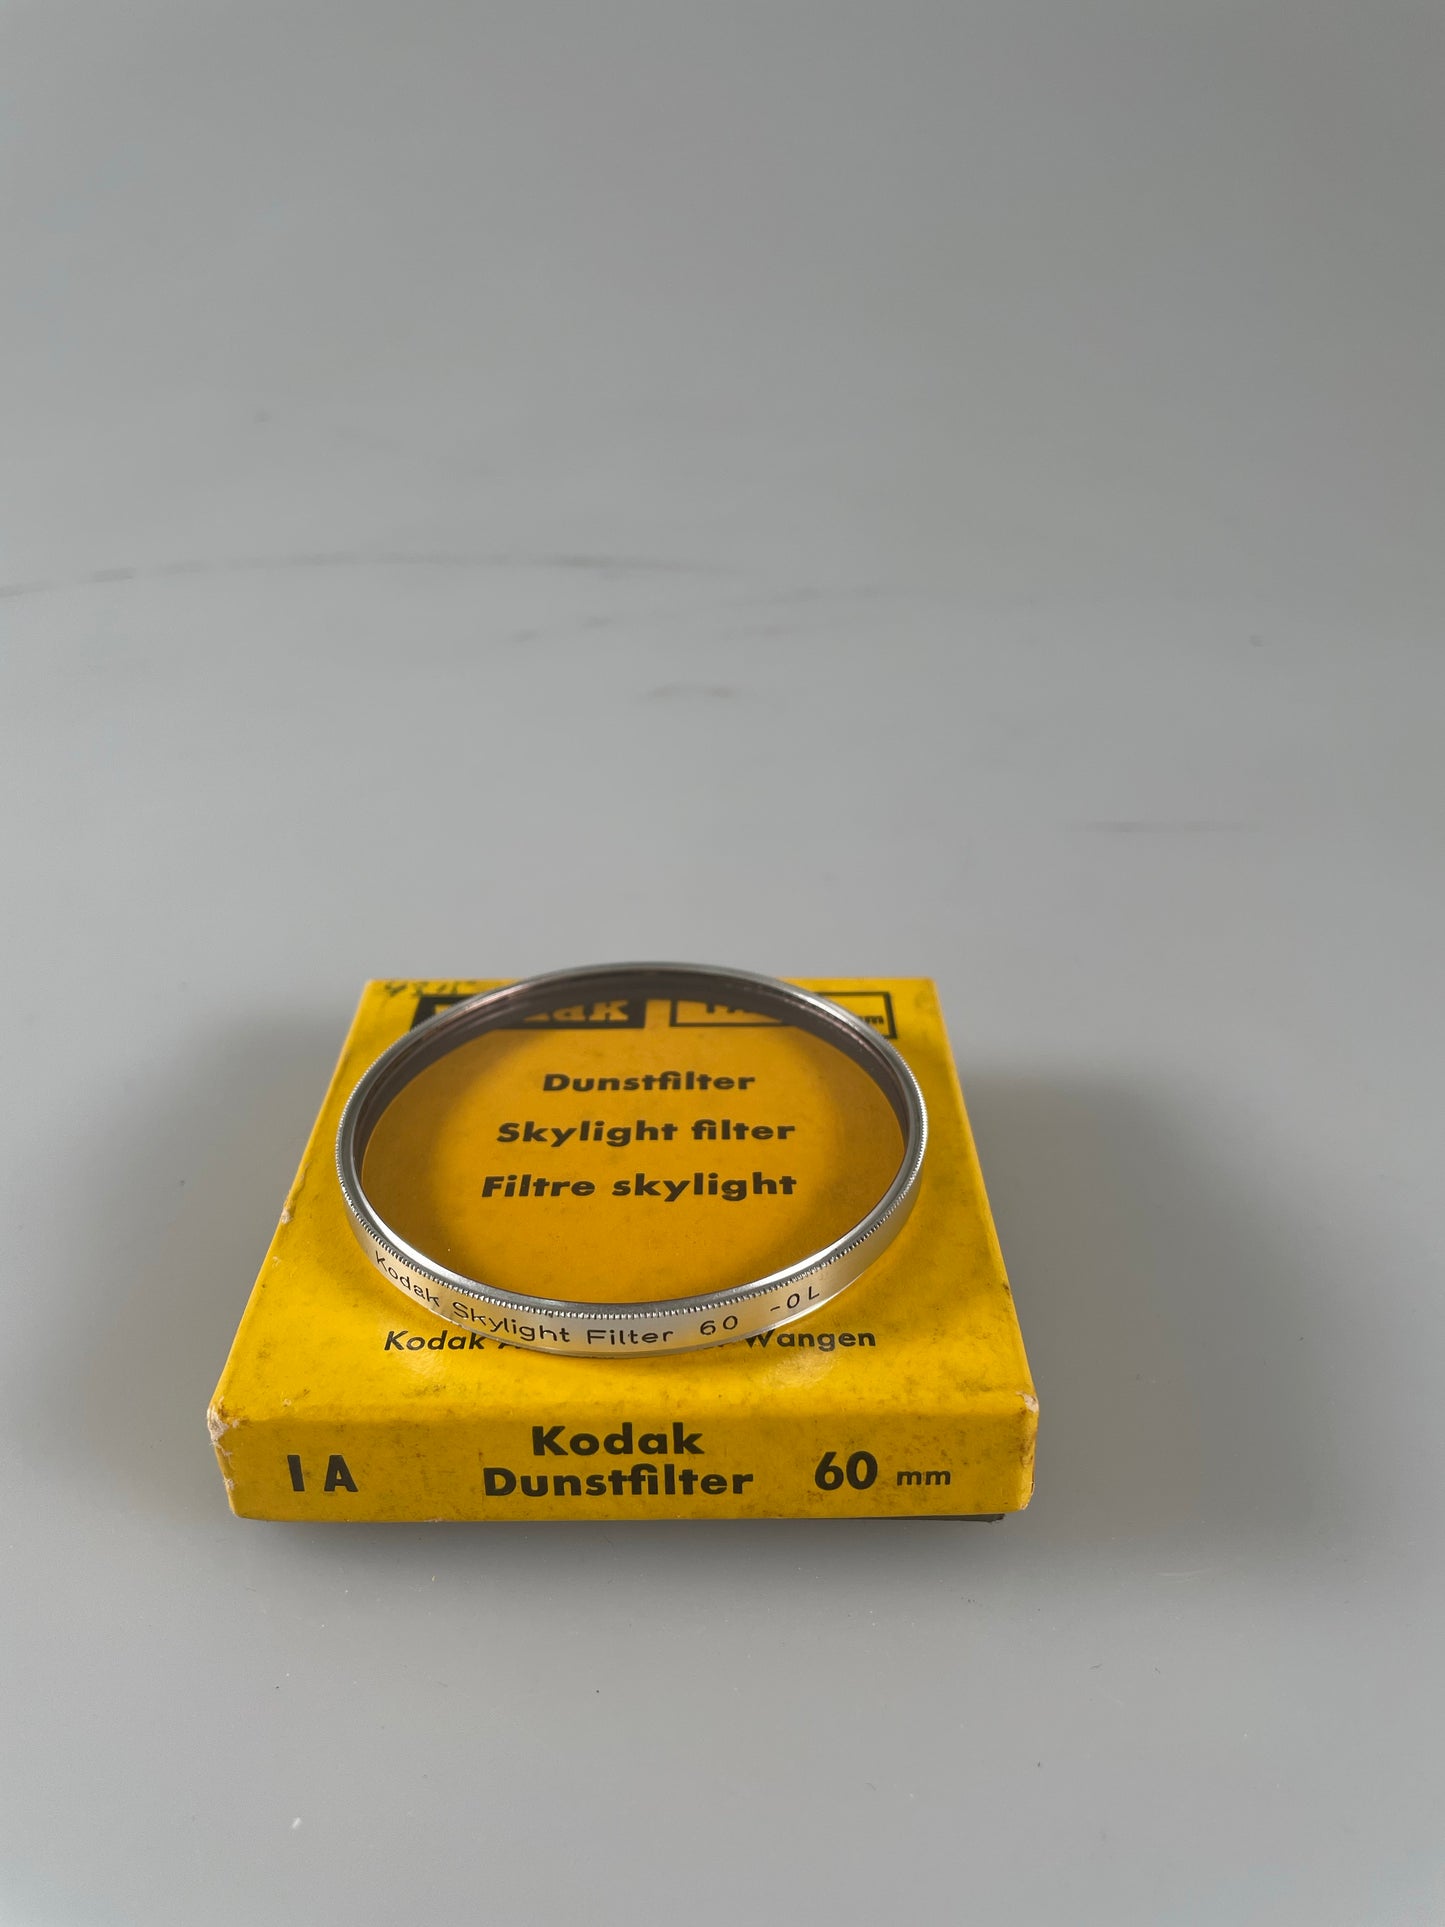 Kodak Skylight Filter Screw-in 60mm 1A